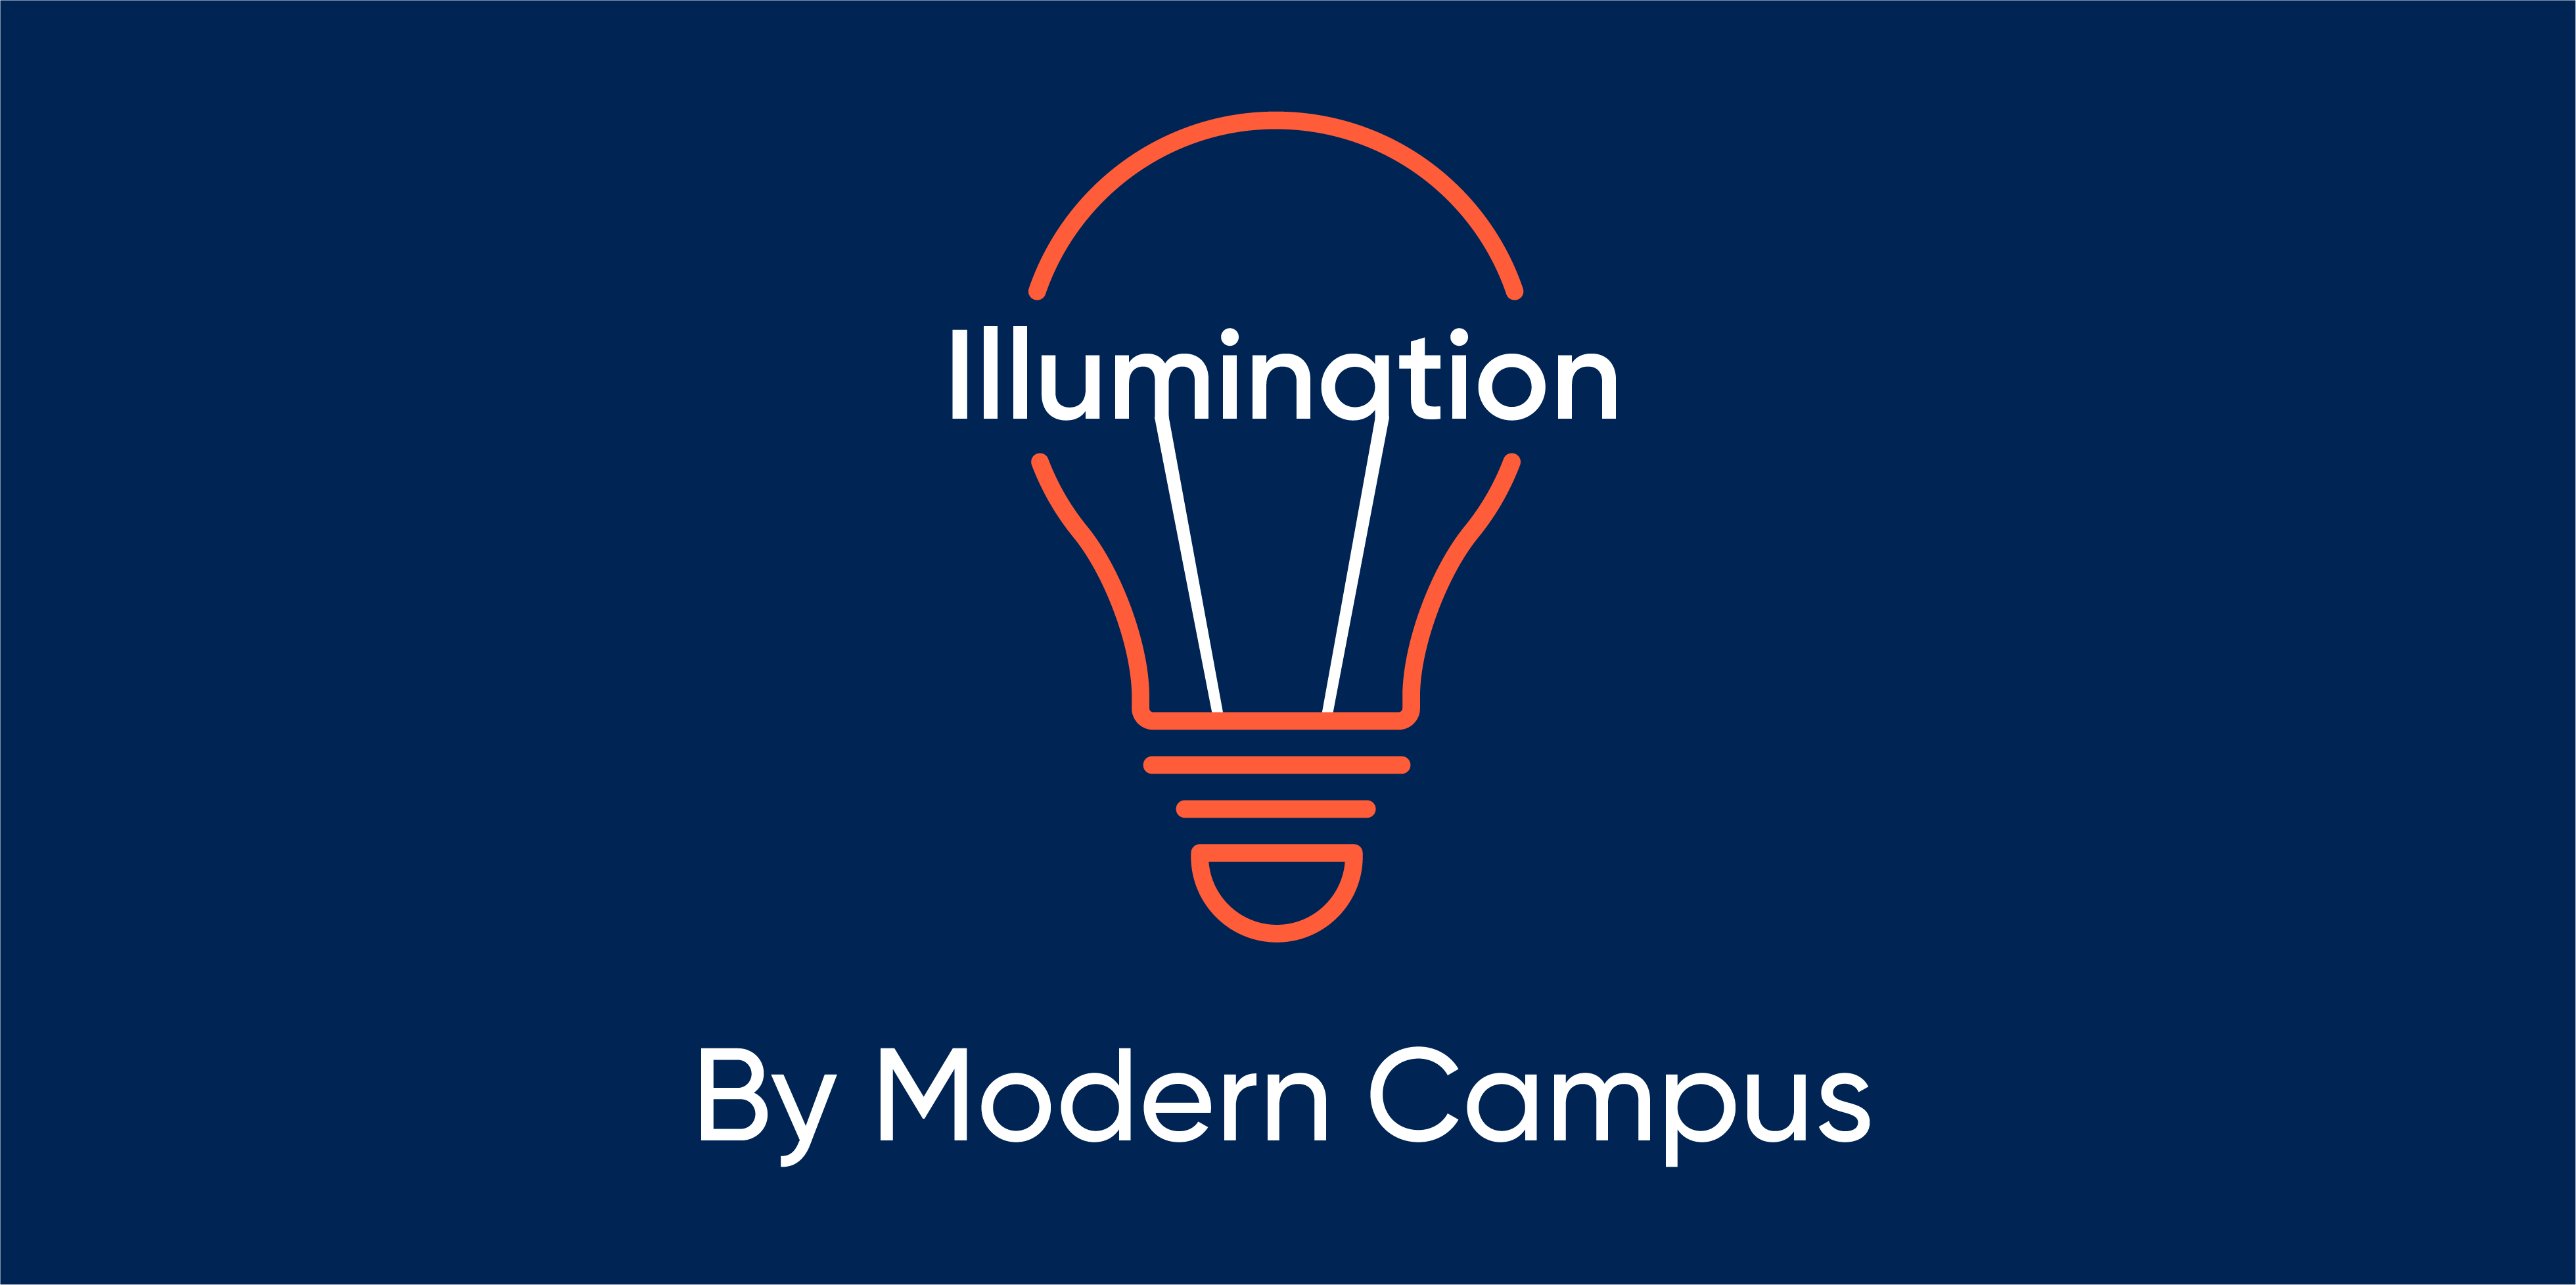 Episode 73: Illumination by Modern Campus